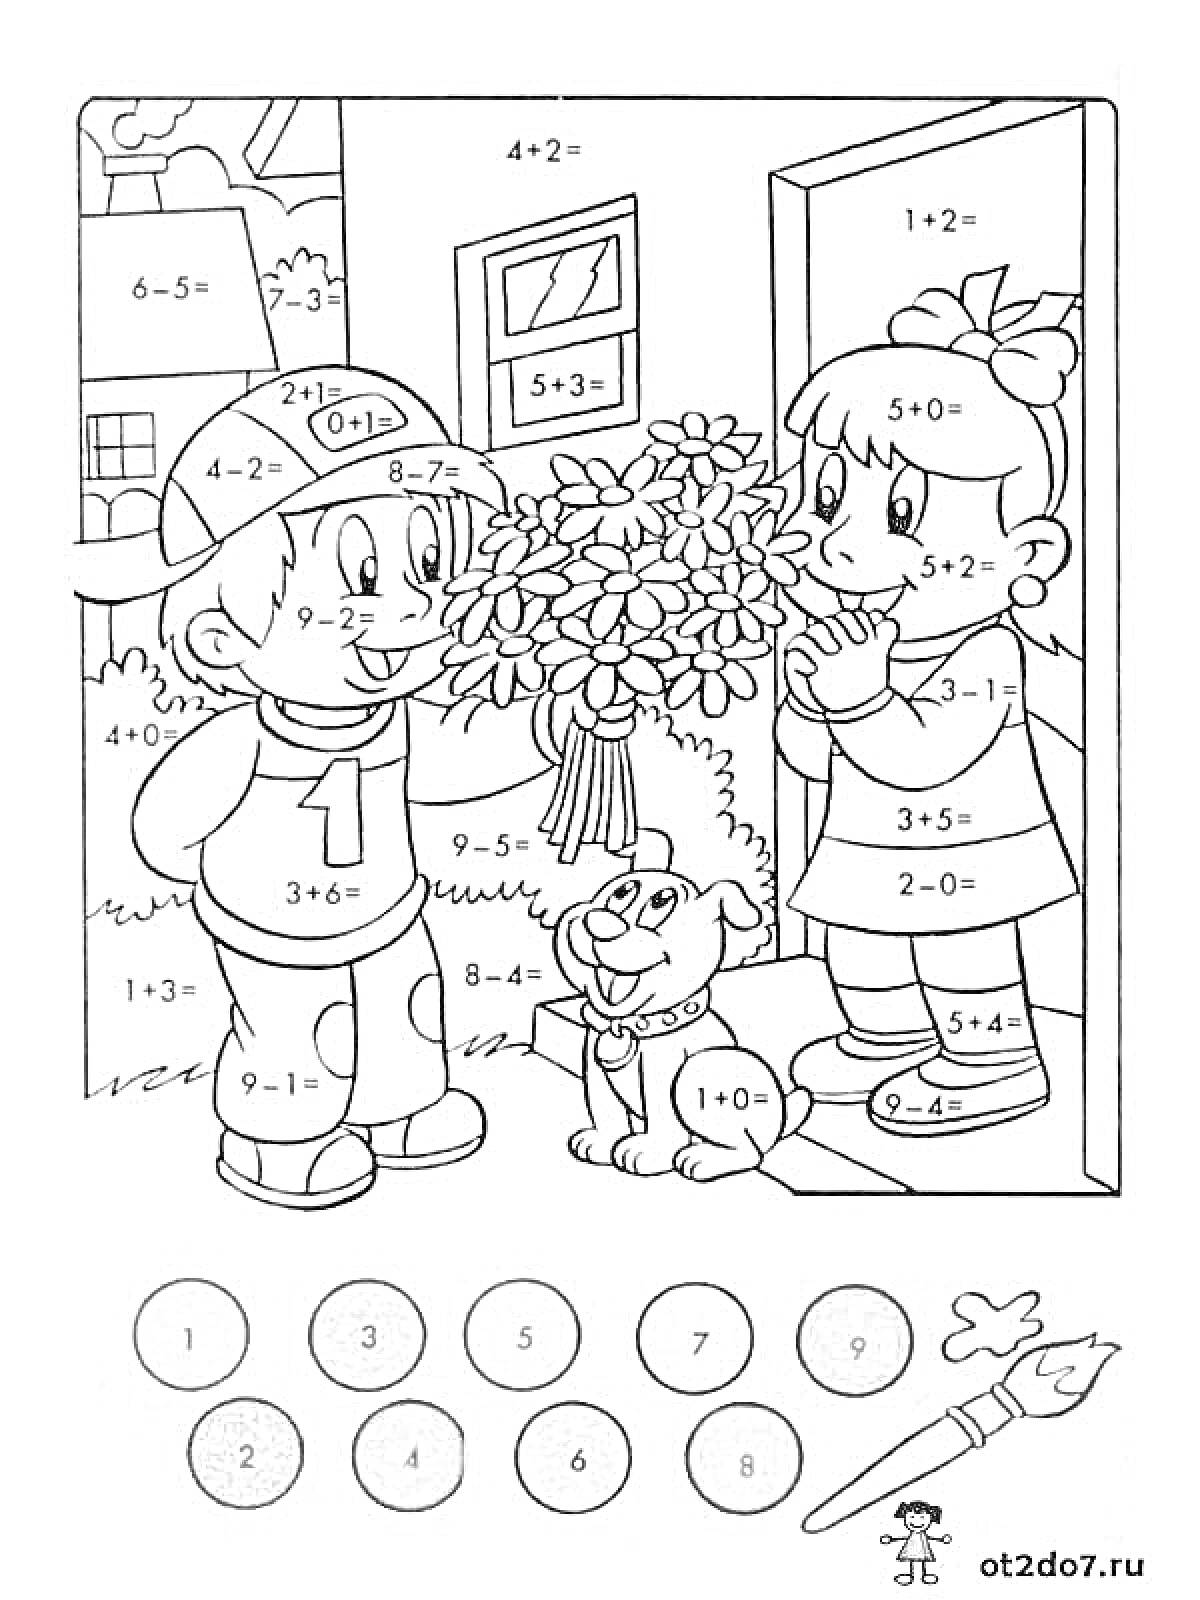 Раскраска Раскраска по математике. Мальчик с букетом, девочка, собака, математические примеры на сложение и вычитание в пределах 10